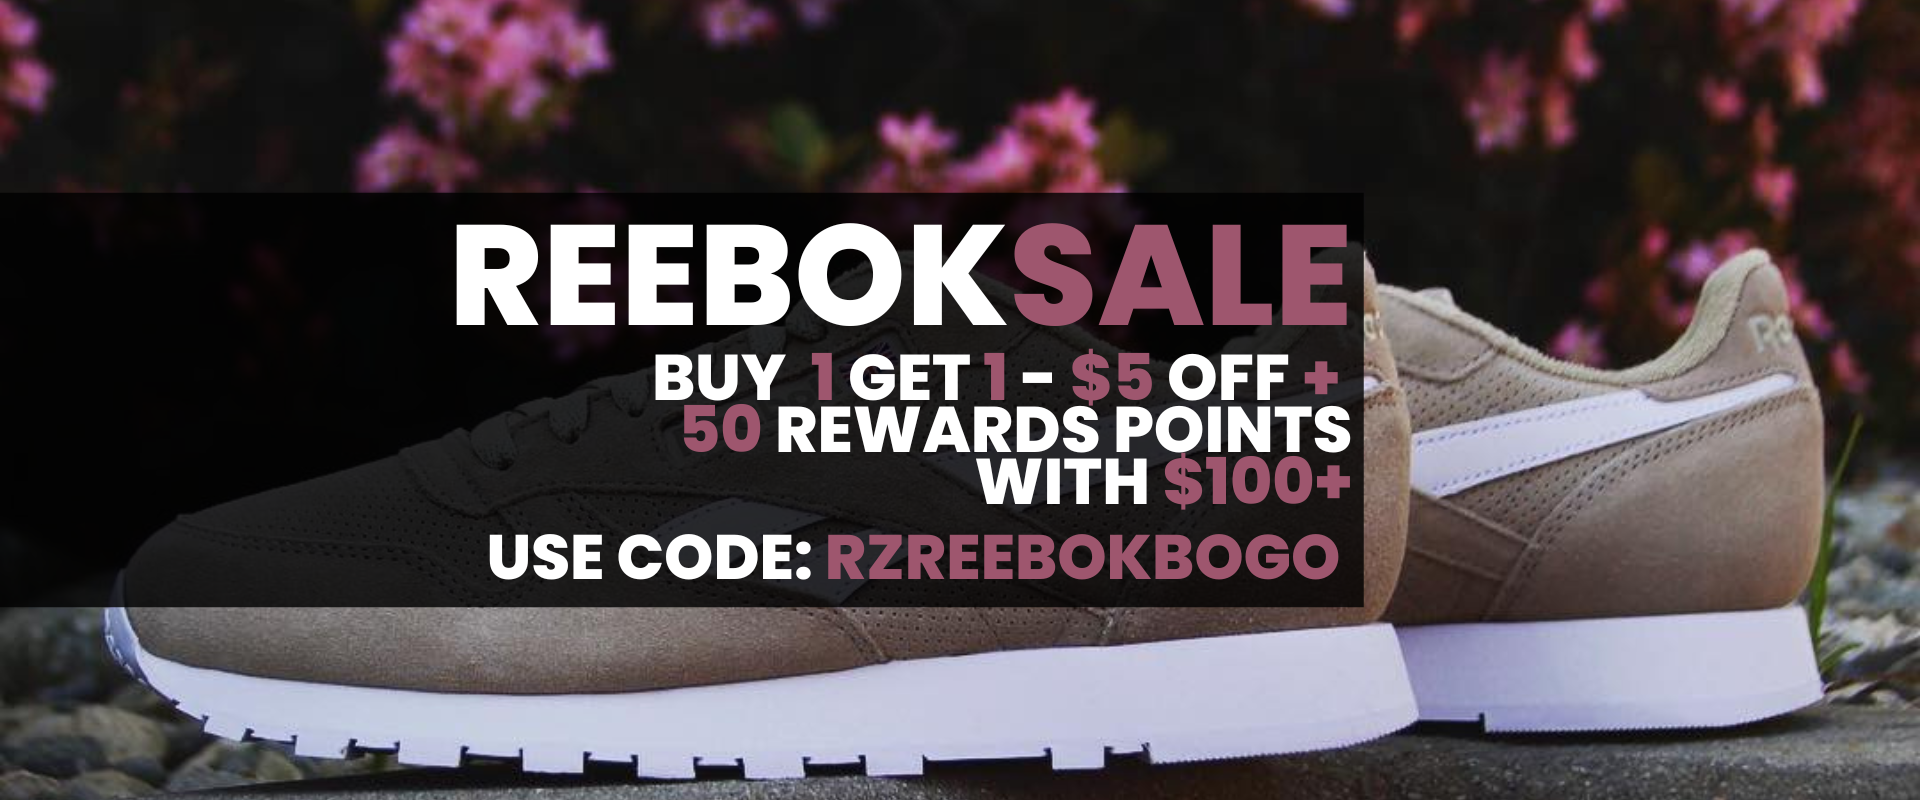 Reebok Sale - $5 OFF + 50 Points